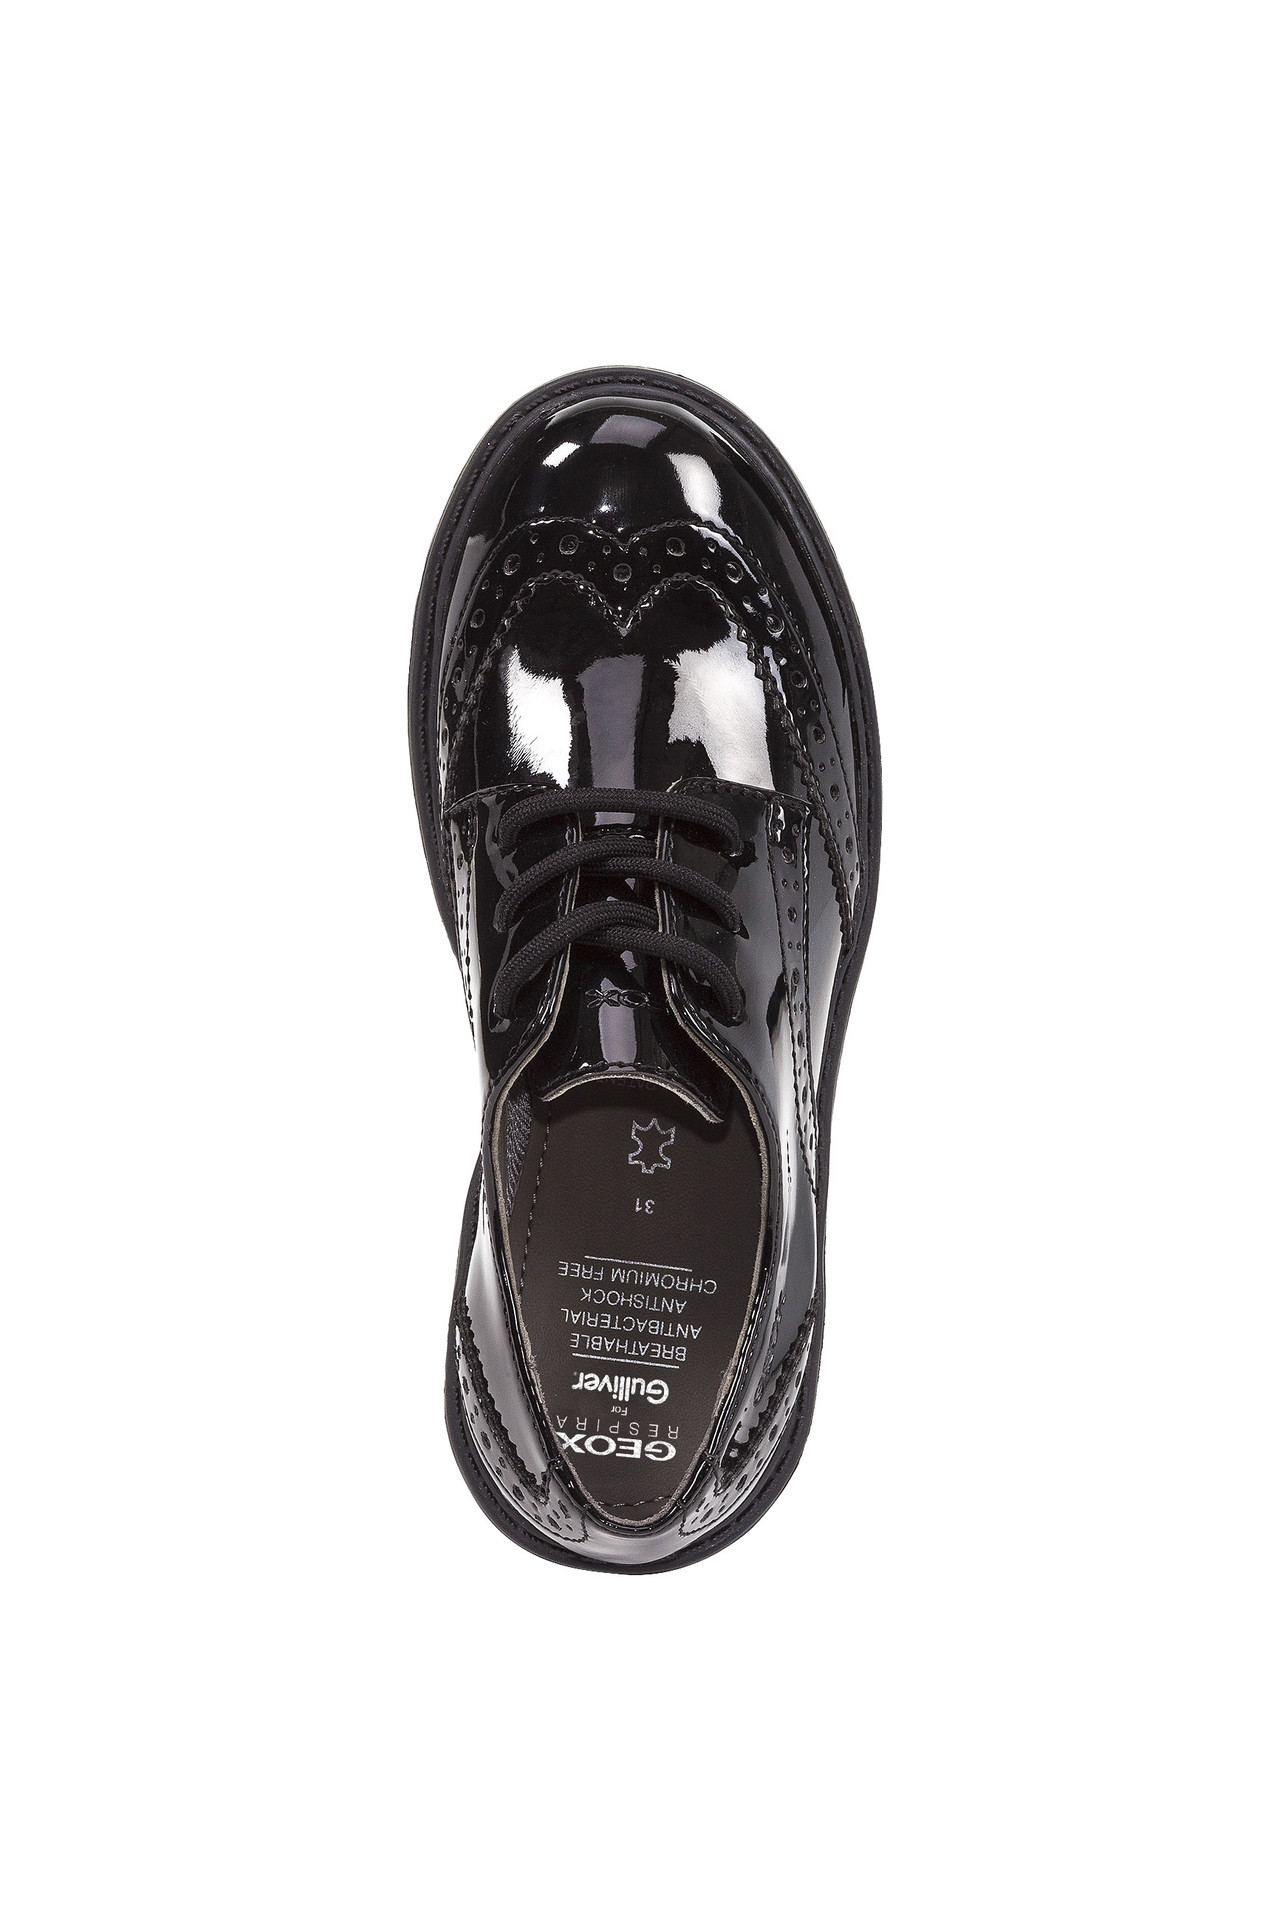 Туфли дерби Geox с лакированными вставками J6420NL00HHC9999, размер 34, цвет черный - фото 5